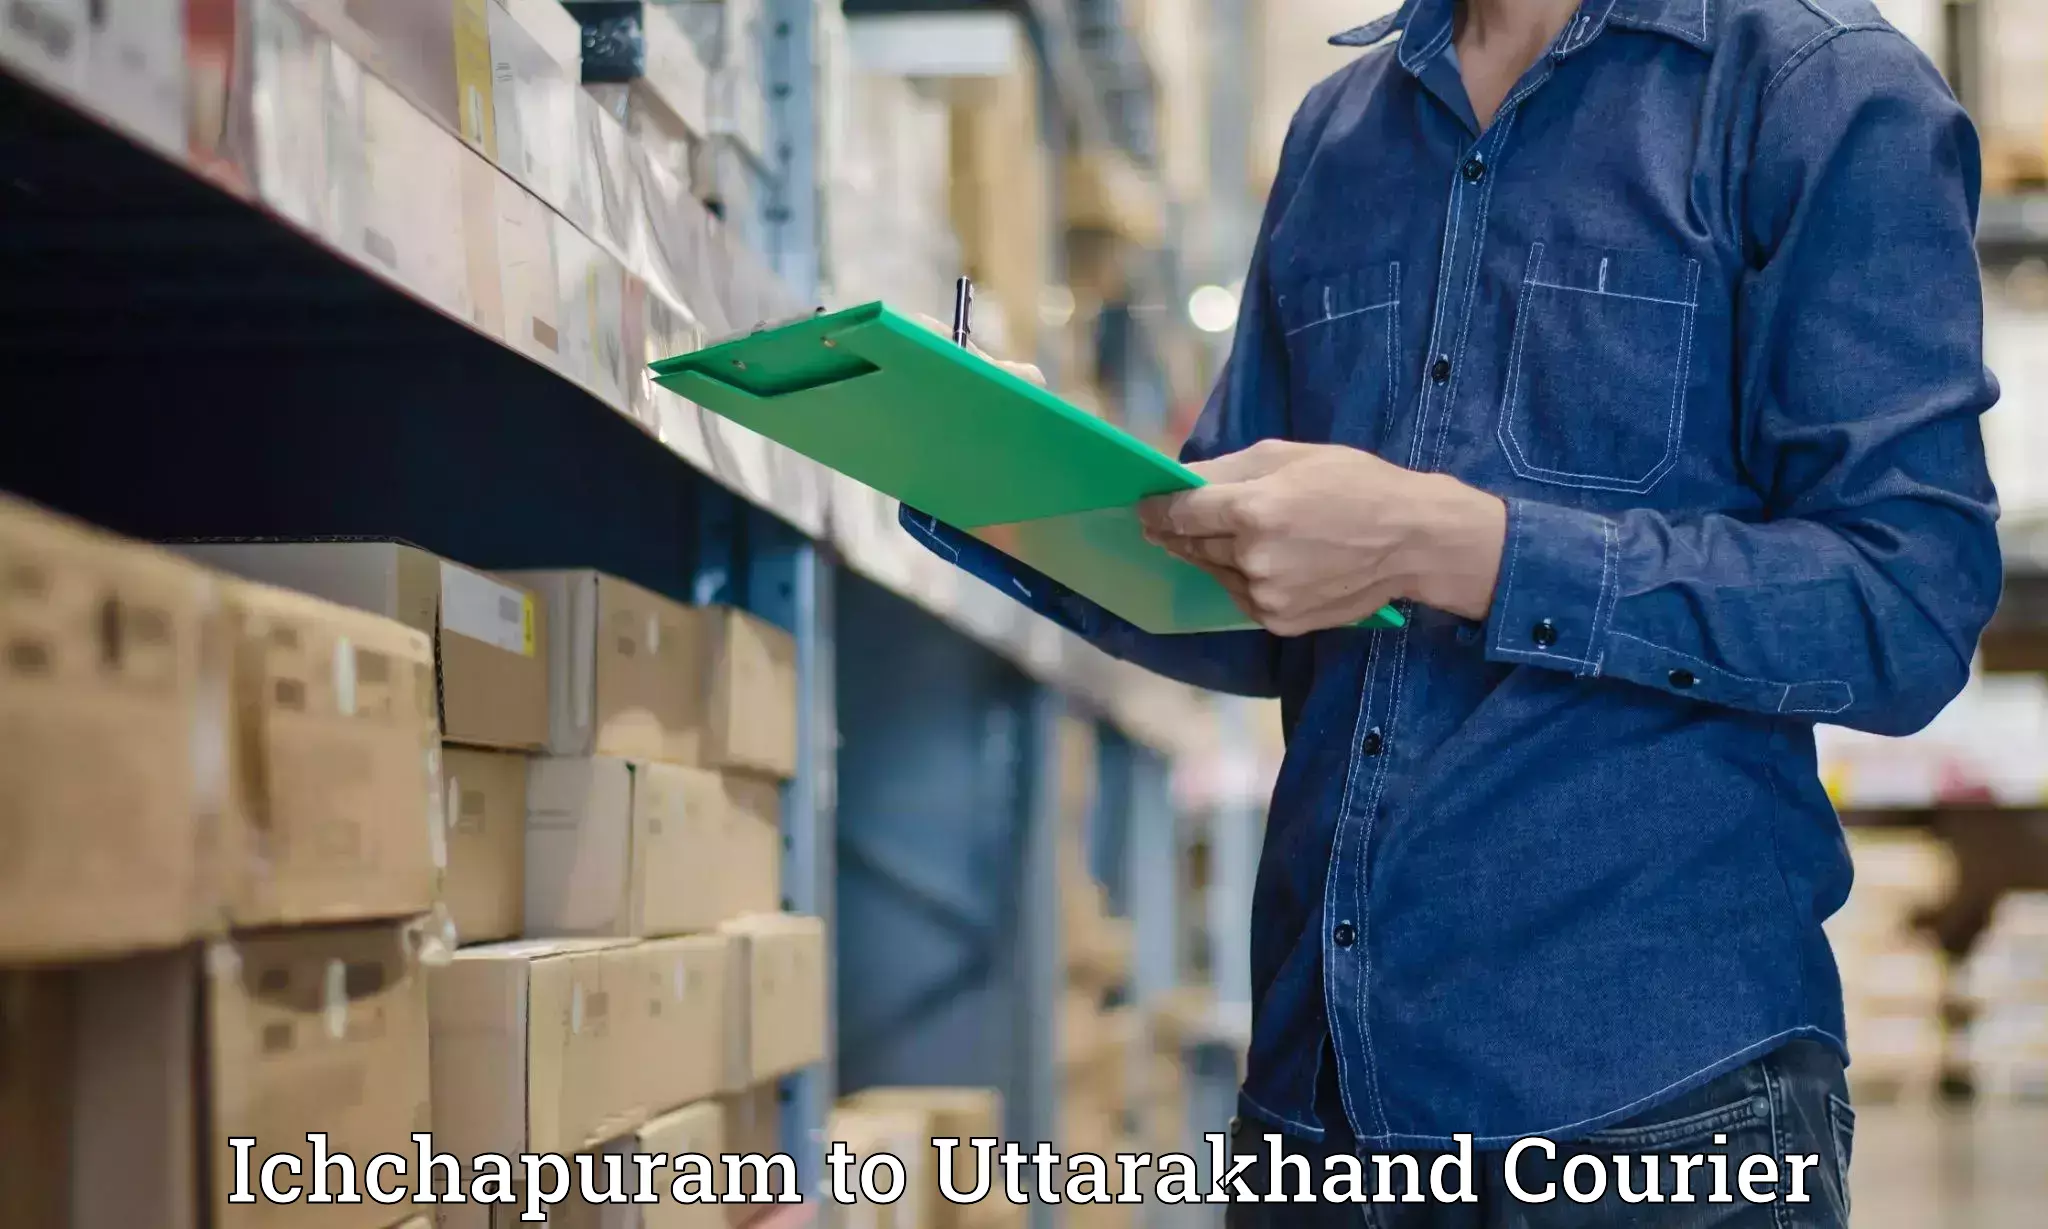 Courier service partnerships Ichchapuram to Bageshwar